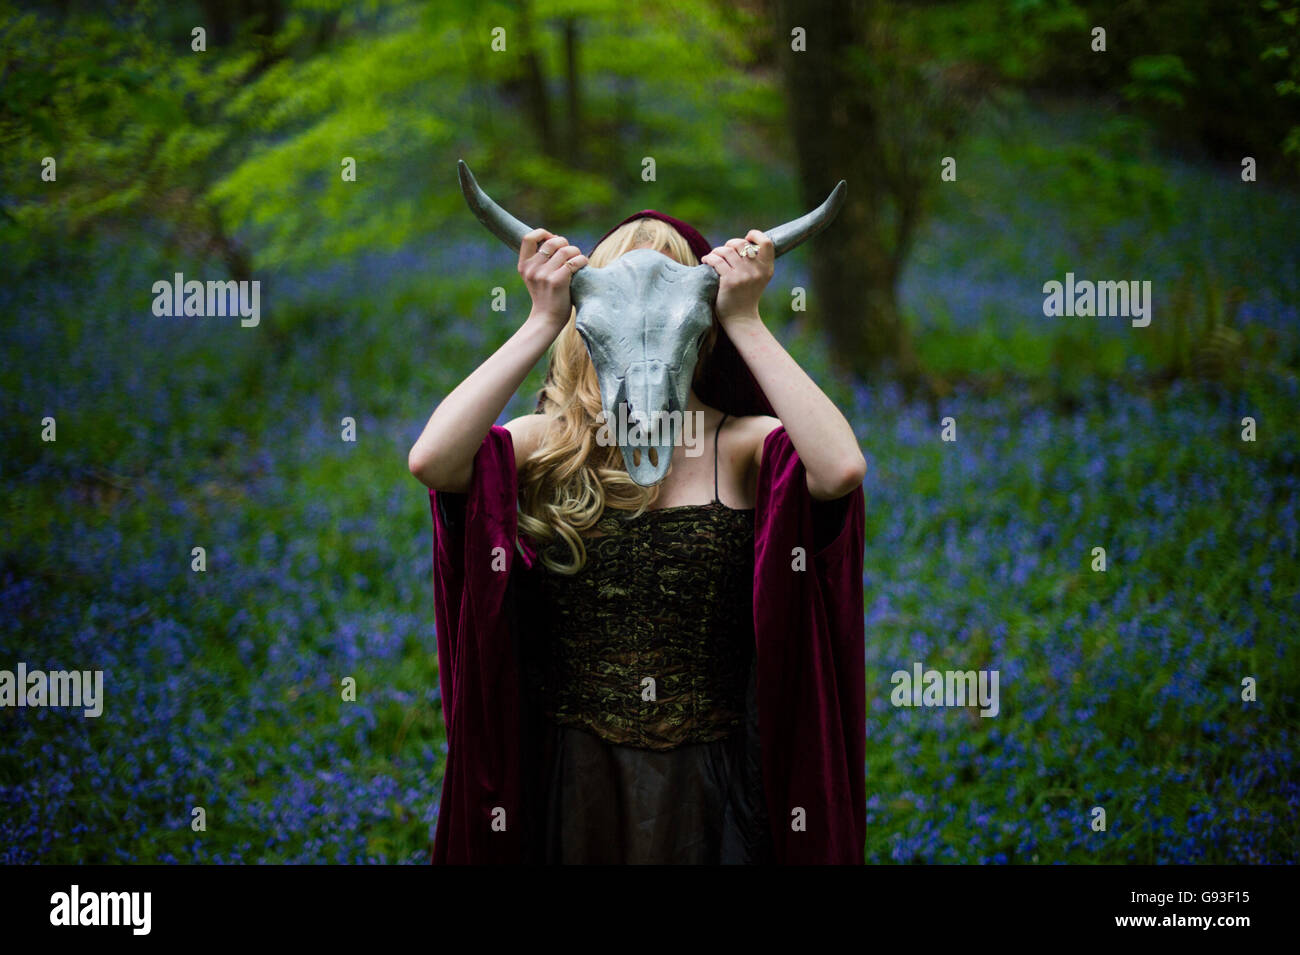 Eine junge Frau, die Modellierung für ein Fantasy-Makeover "Game of Thrones" Fotografie im freien Stil: Göttin / Priesterin / Jägerin im Wald, ein Metall Tiere halten gehörnten Schädel vor ihr Gesicht, UK Stockfoto